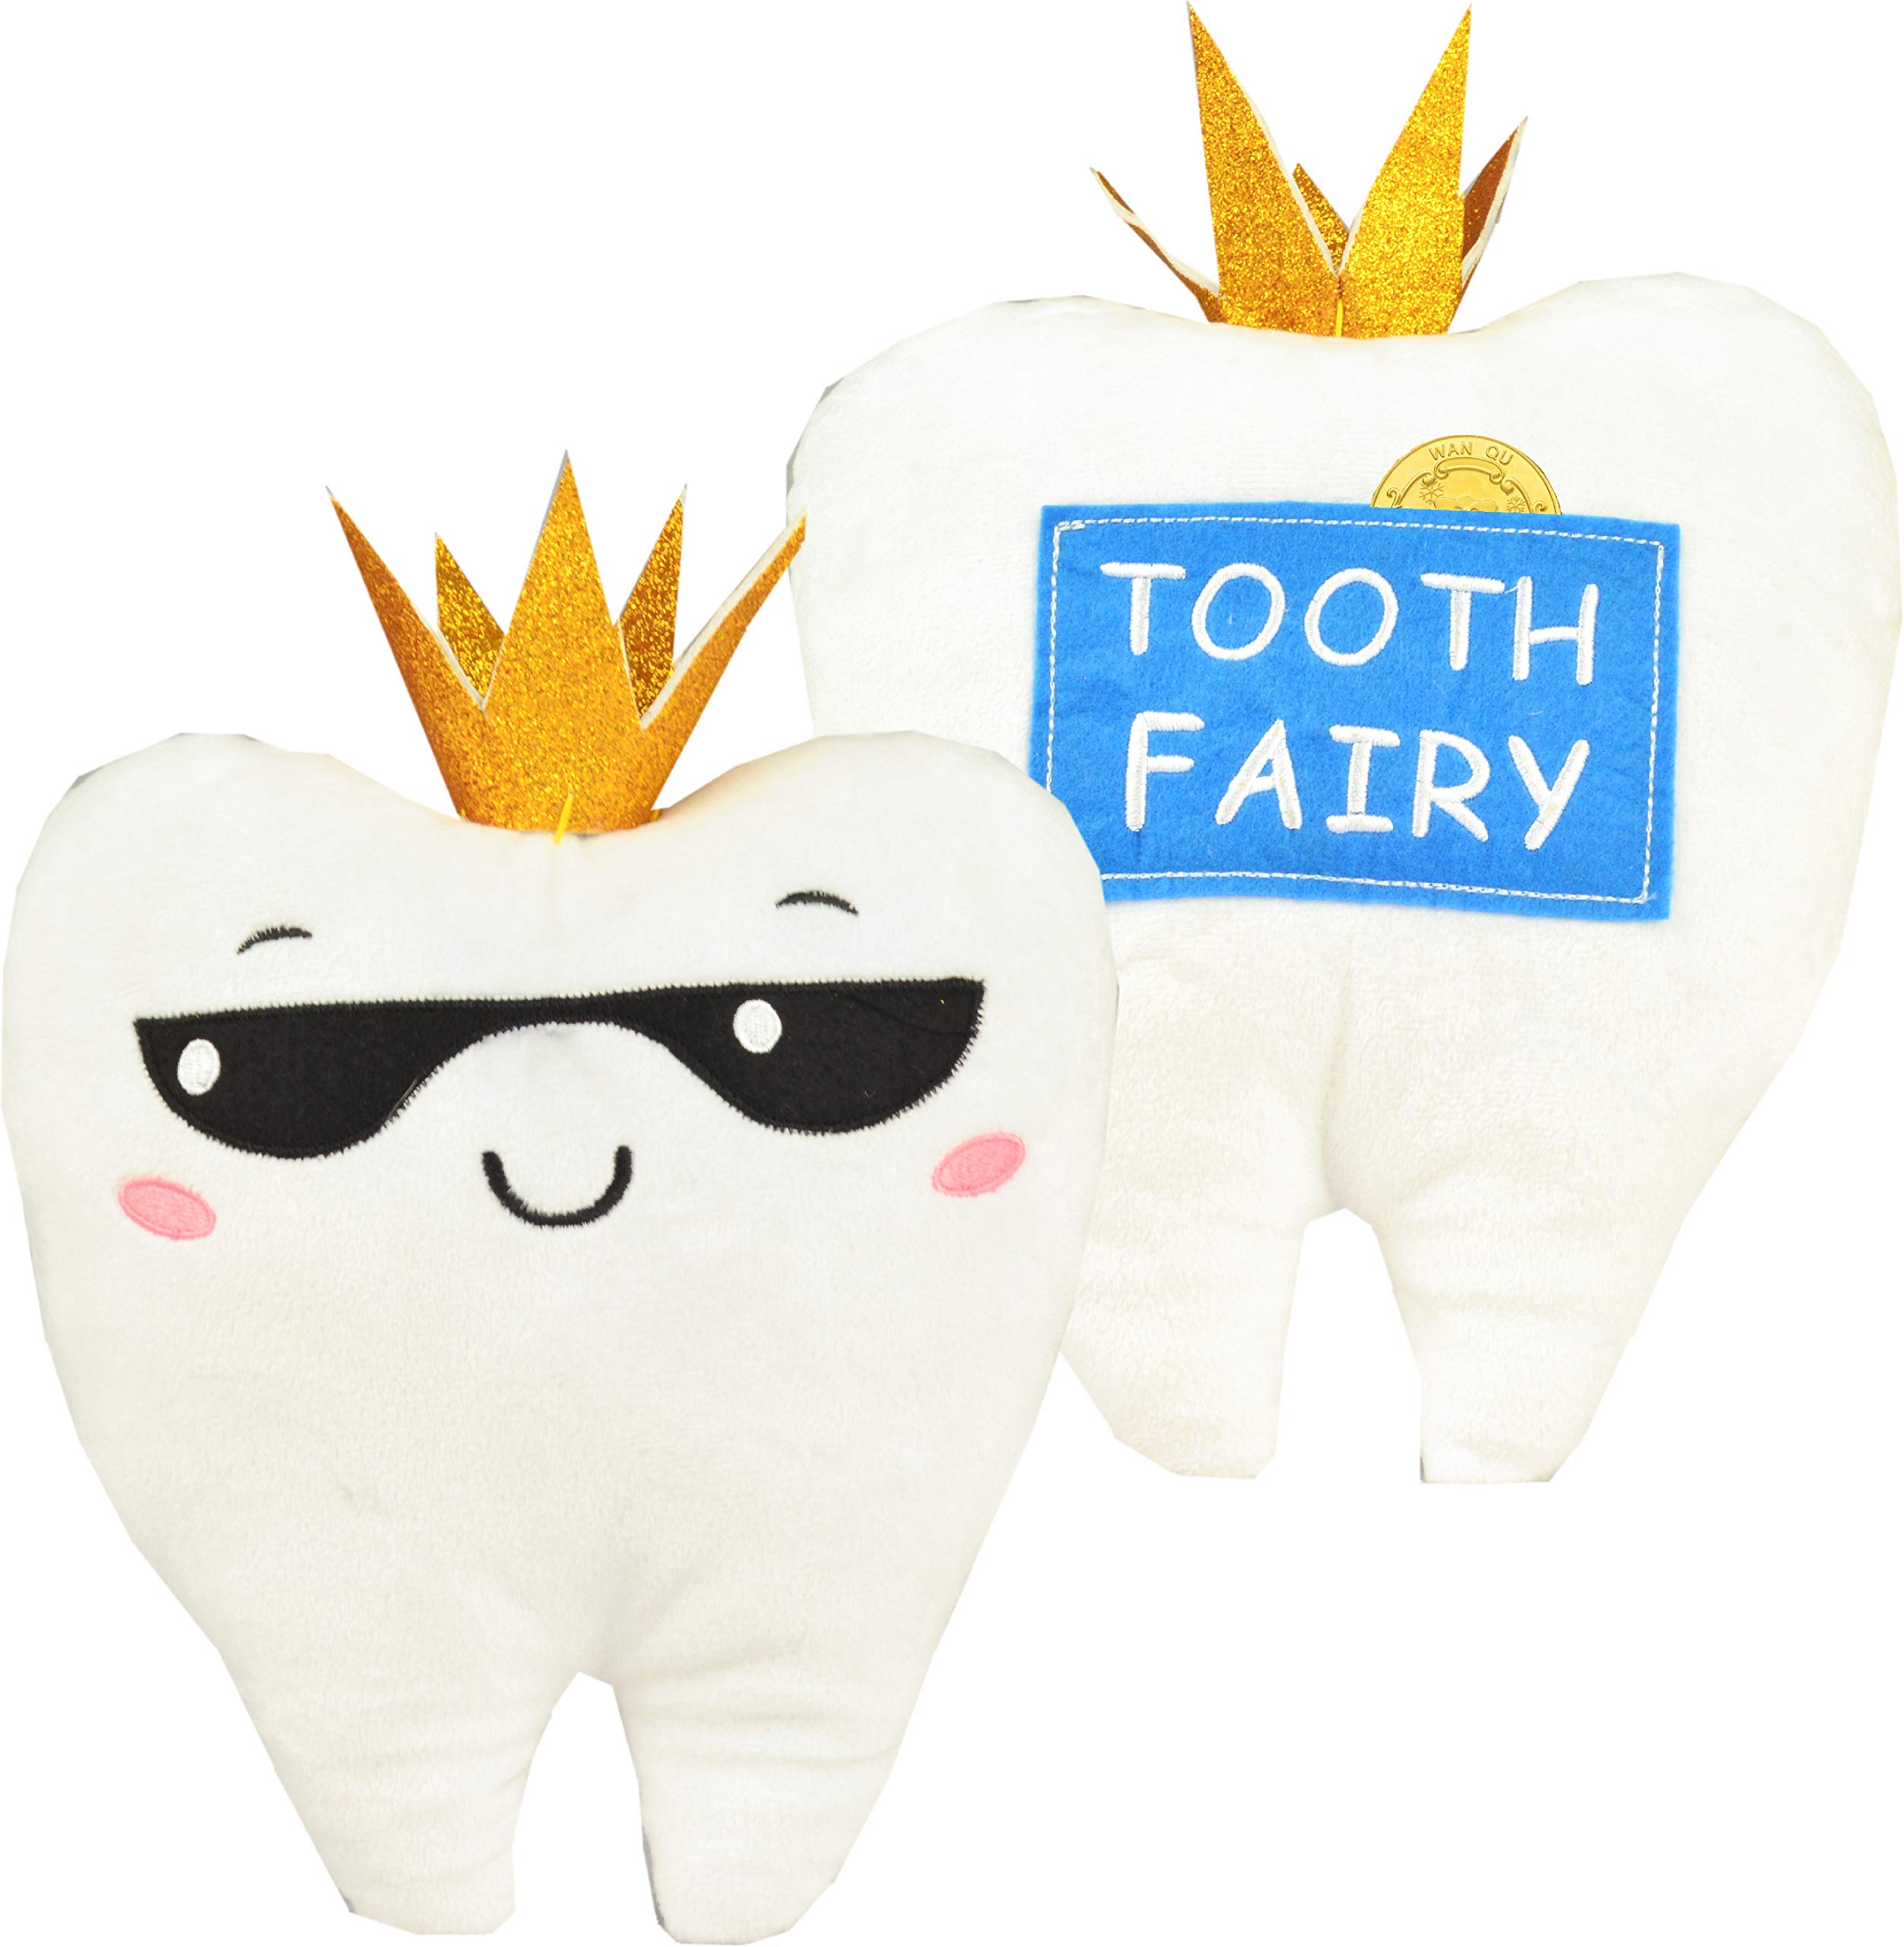 Tooth Fairy Kit Boys, Tooth Fairy for Boys, Tooth Fairy Pillow Boy, Tooth Fairy Box for Boys, Tooth Fairy Coins Boys, Tooth Keepsake Box for Boys, Baby Tooth Boy, Boy Tooth Box, Tooth Fairy Boy